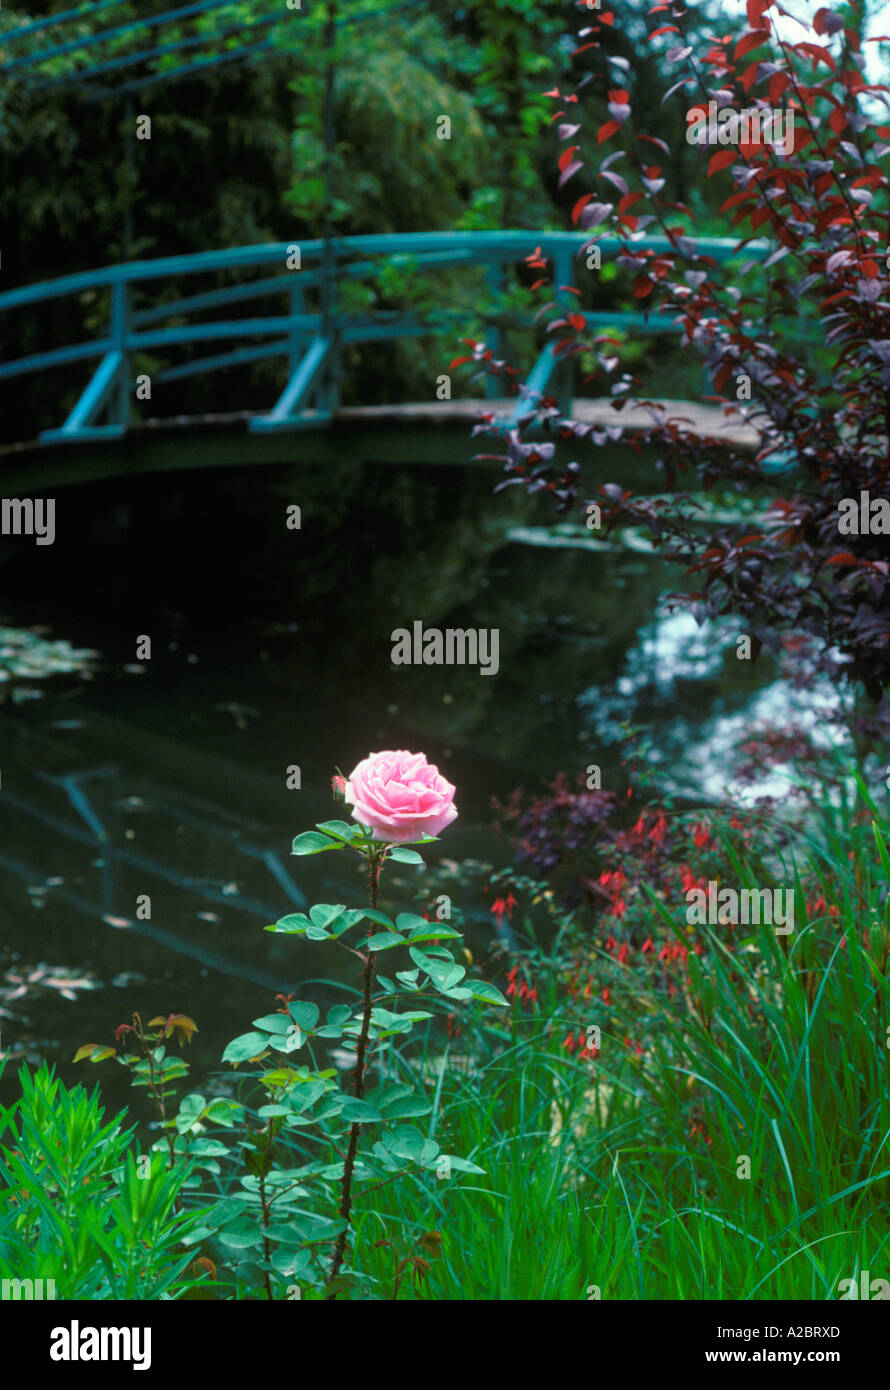 Giverny, Eure France. Rose simple dans le jardin, maison et atelier de l'artiste impressionniste français Claude Monet. Pont bleu japonais et étang. Banque D'Images